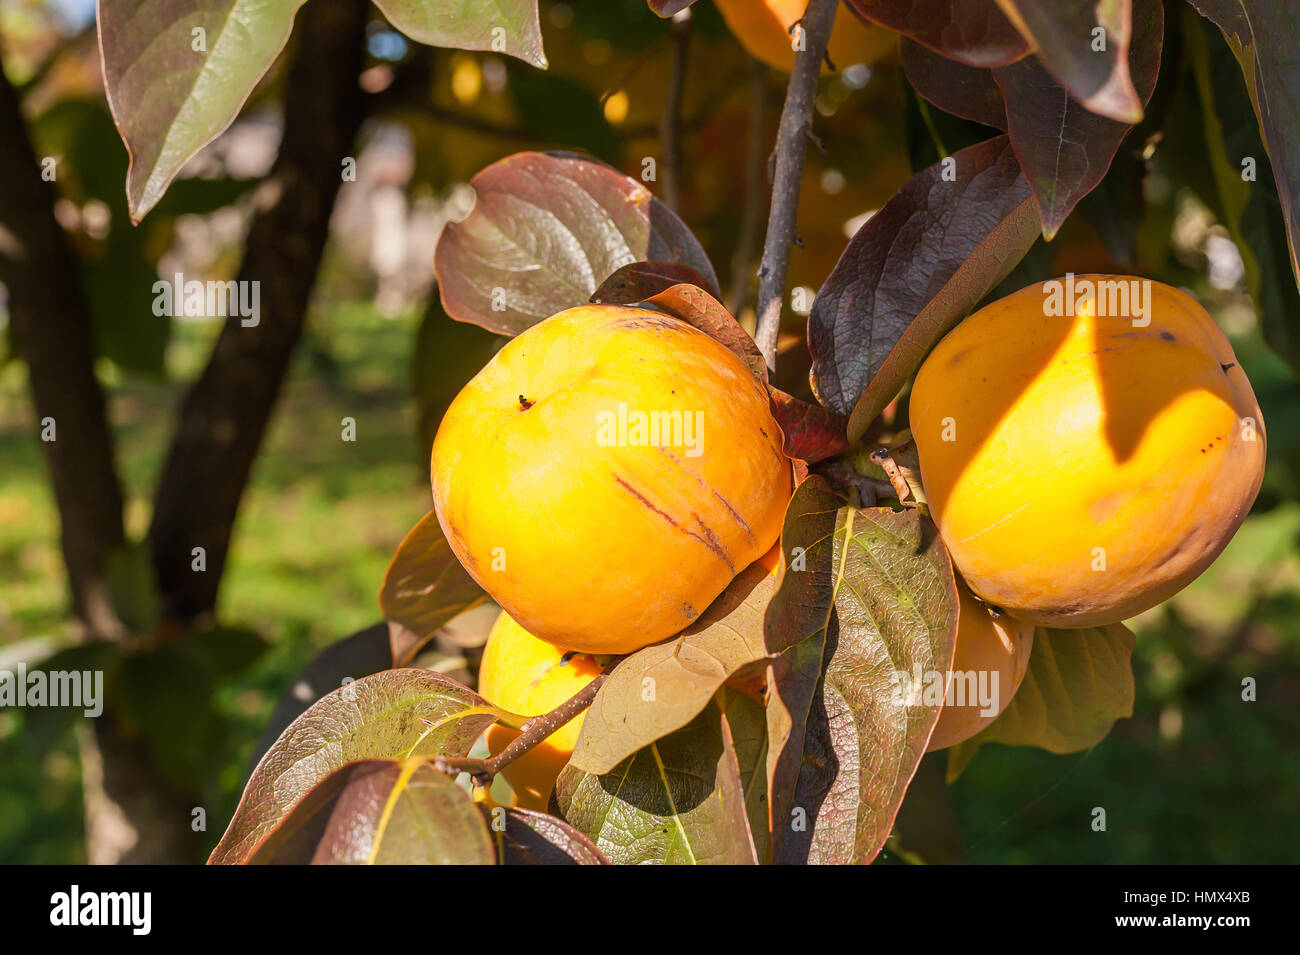 Kaki mûr de fruits à l'arbre. Saison d'automne. Banque D'Images